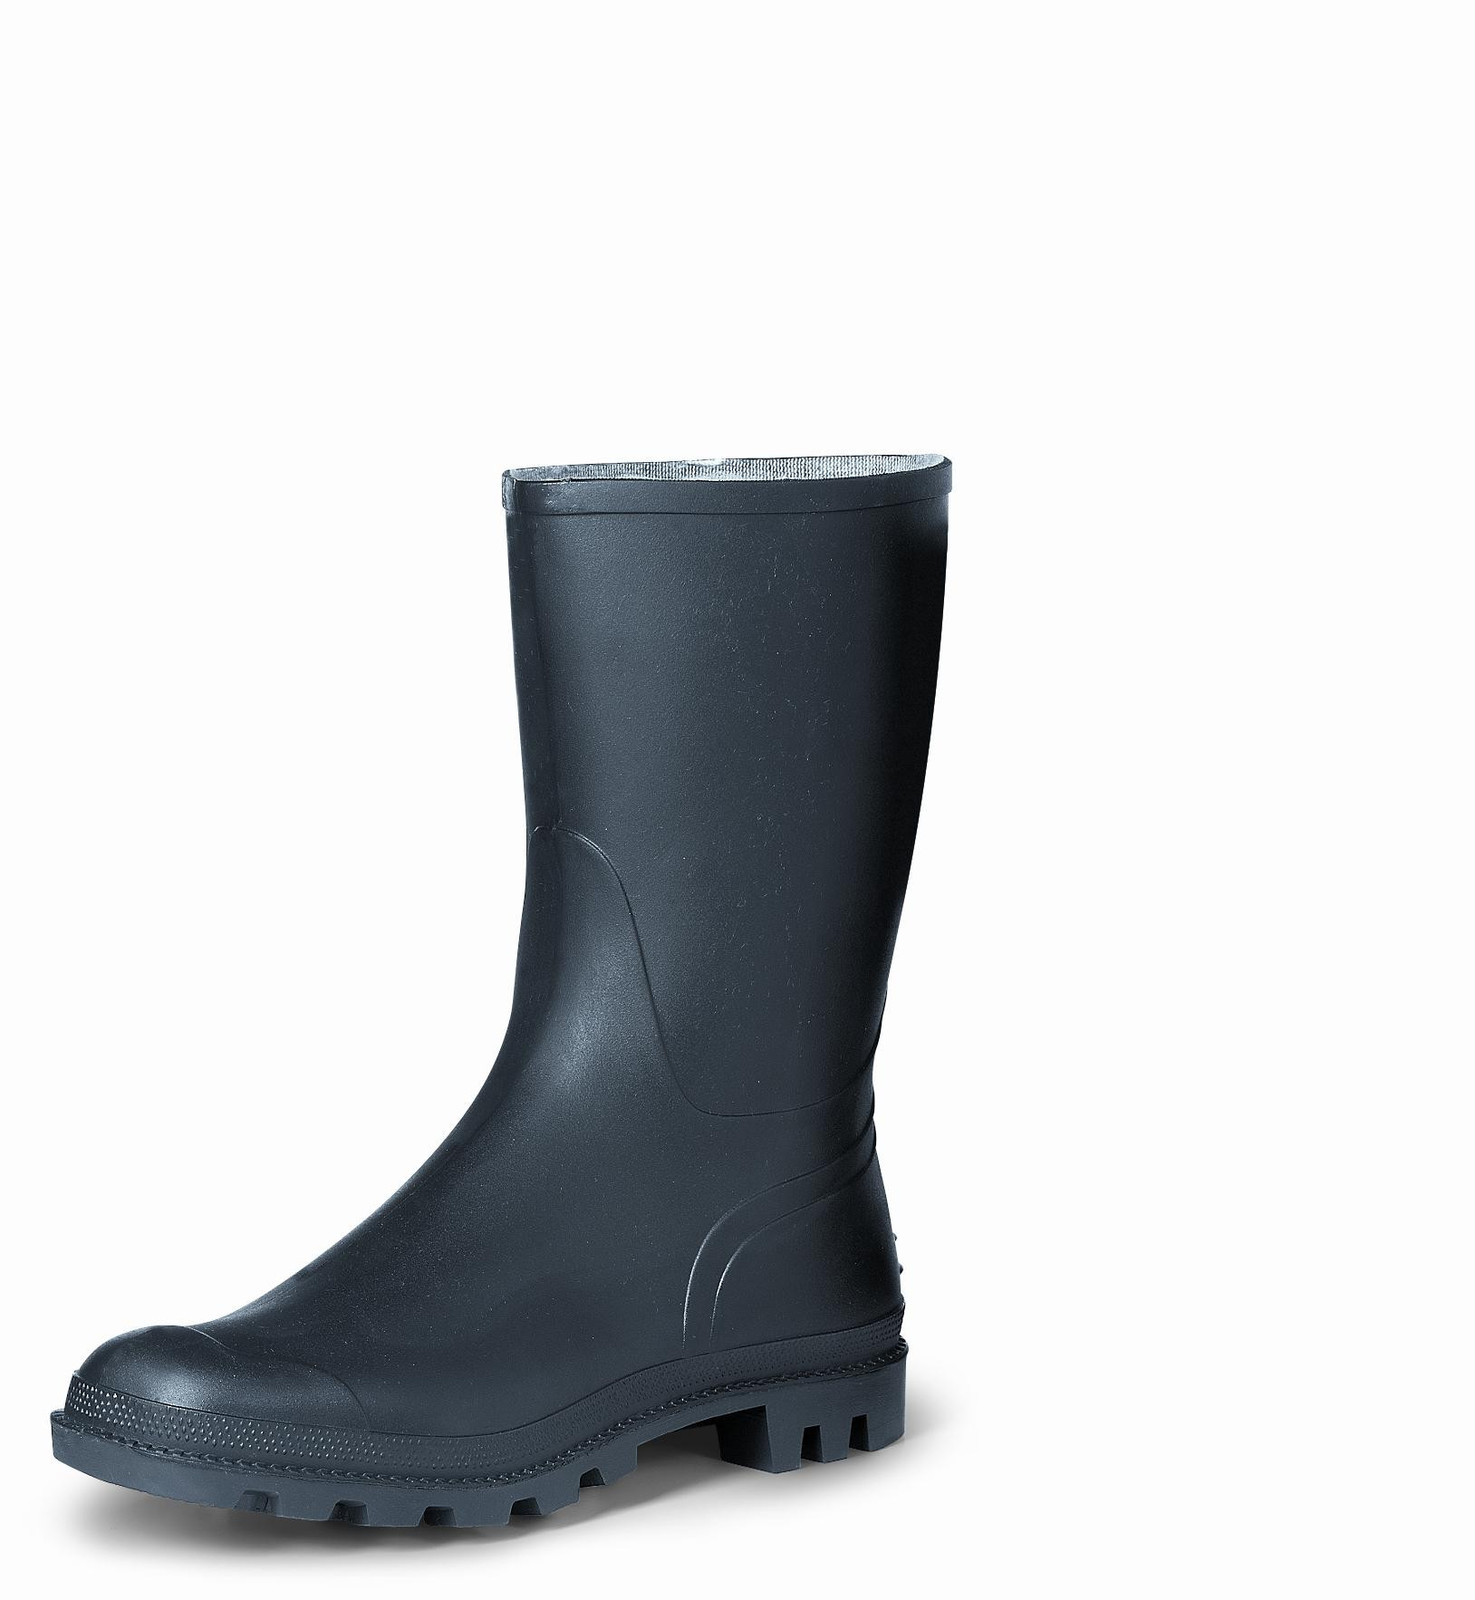 Gumáky Boots Troncheto PVC nízke - veľkosť: 47, farba: čierna